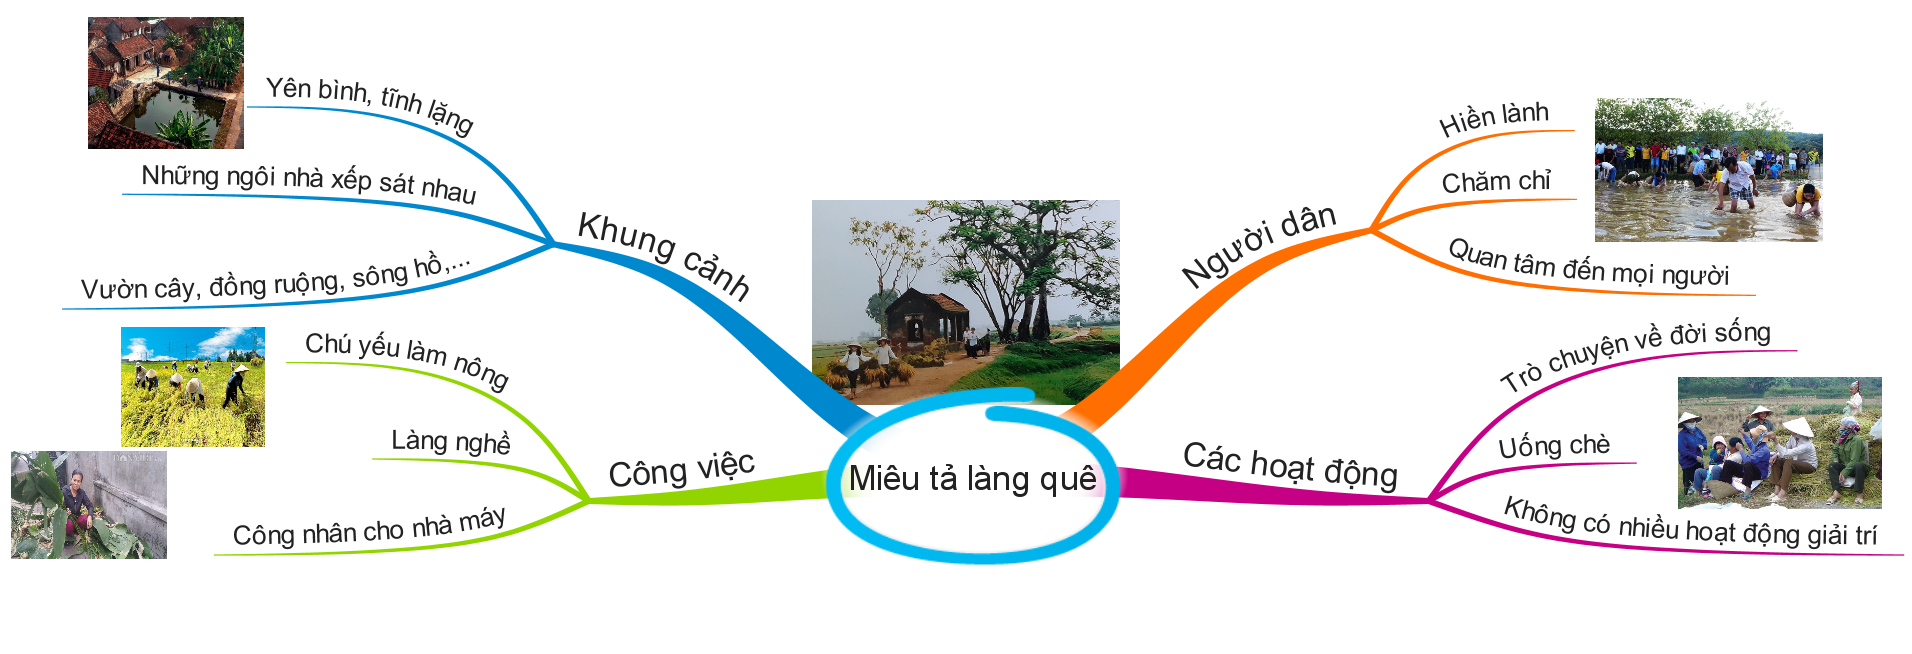 3 bước đơn giản hoàn thành bài viết tiếng Anh miêu tả làng quê